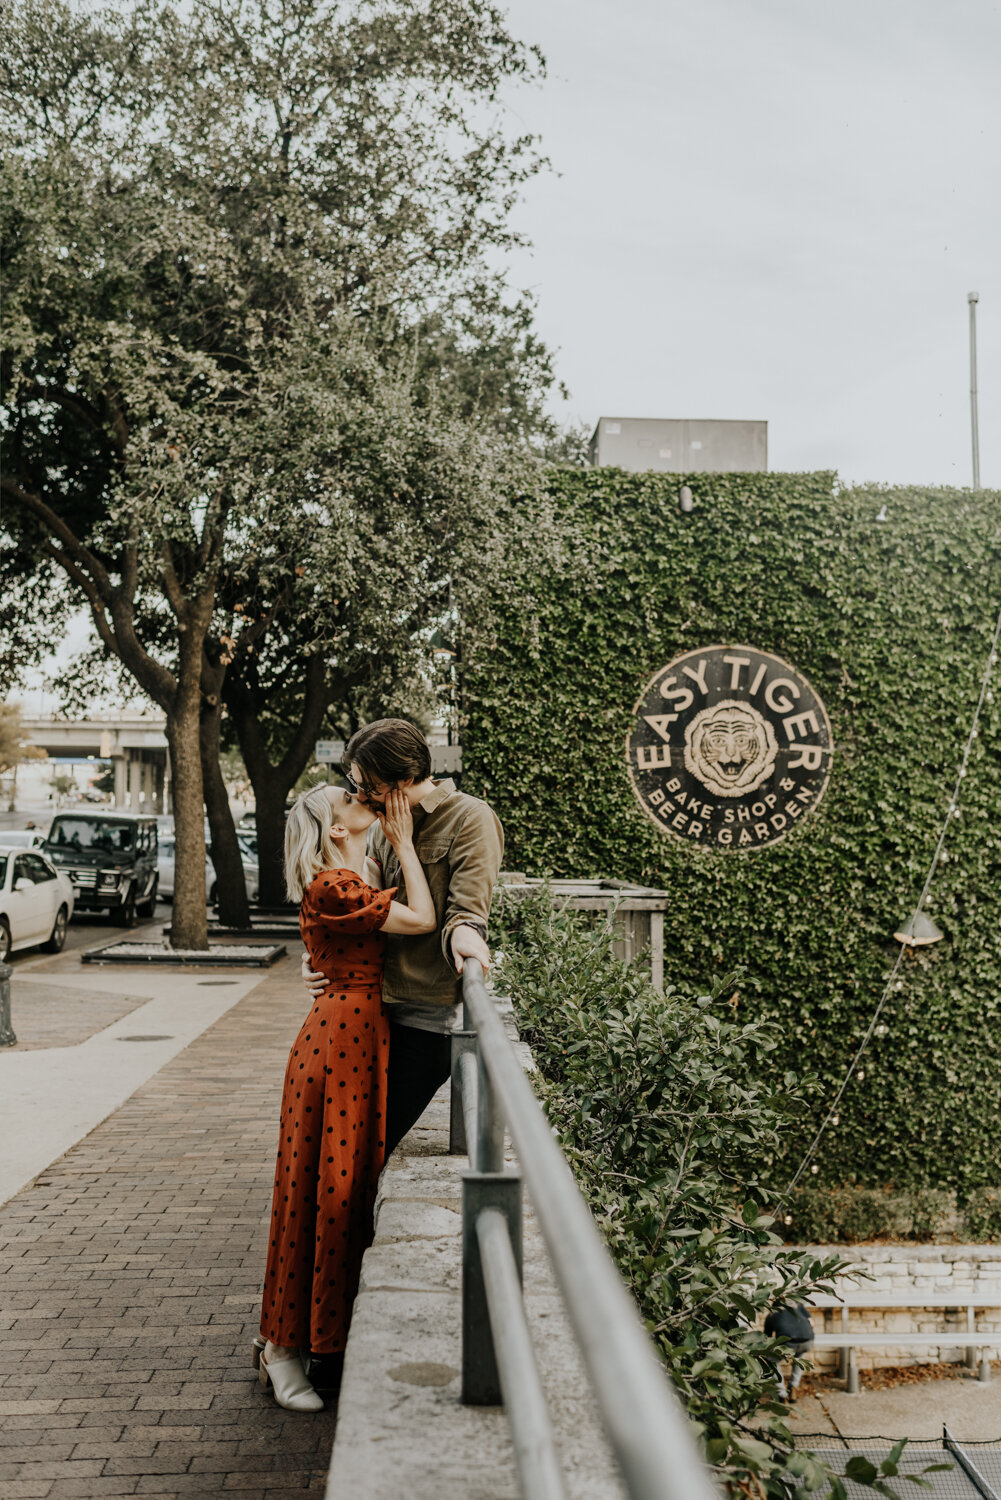 Austin, Texas Unique Engagement Photo Locations